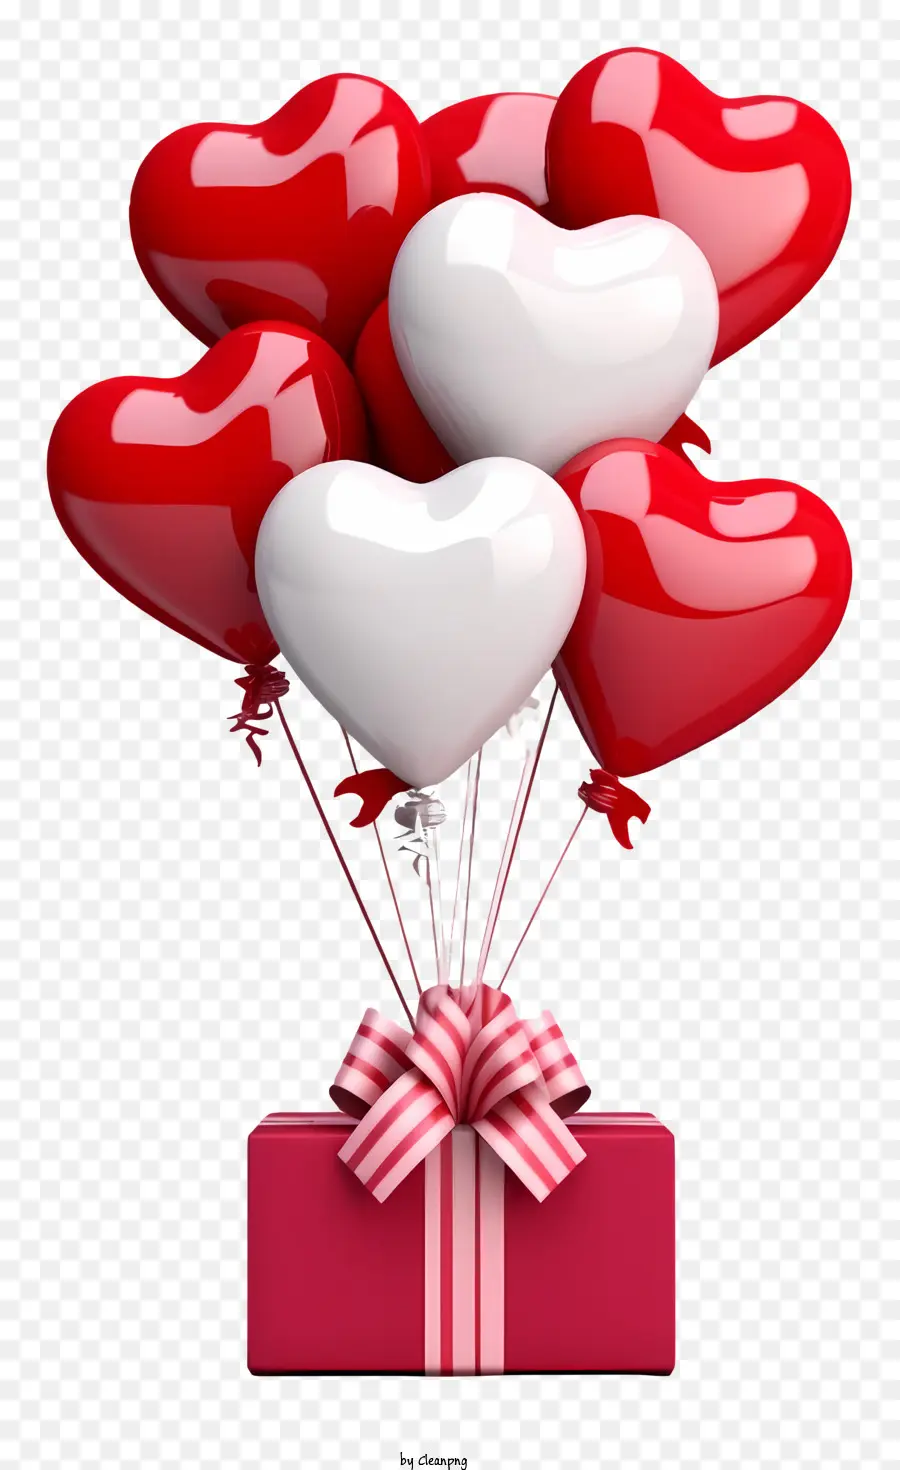 Realistic 3D Valentine Gift Galloon Palloon Scatola a forma di cuore Box rosa con palloncini rossi e bianchi - Disposizione di palloncini rossi e bianchi con scatola a forma di cuore